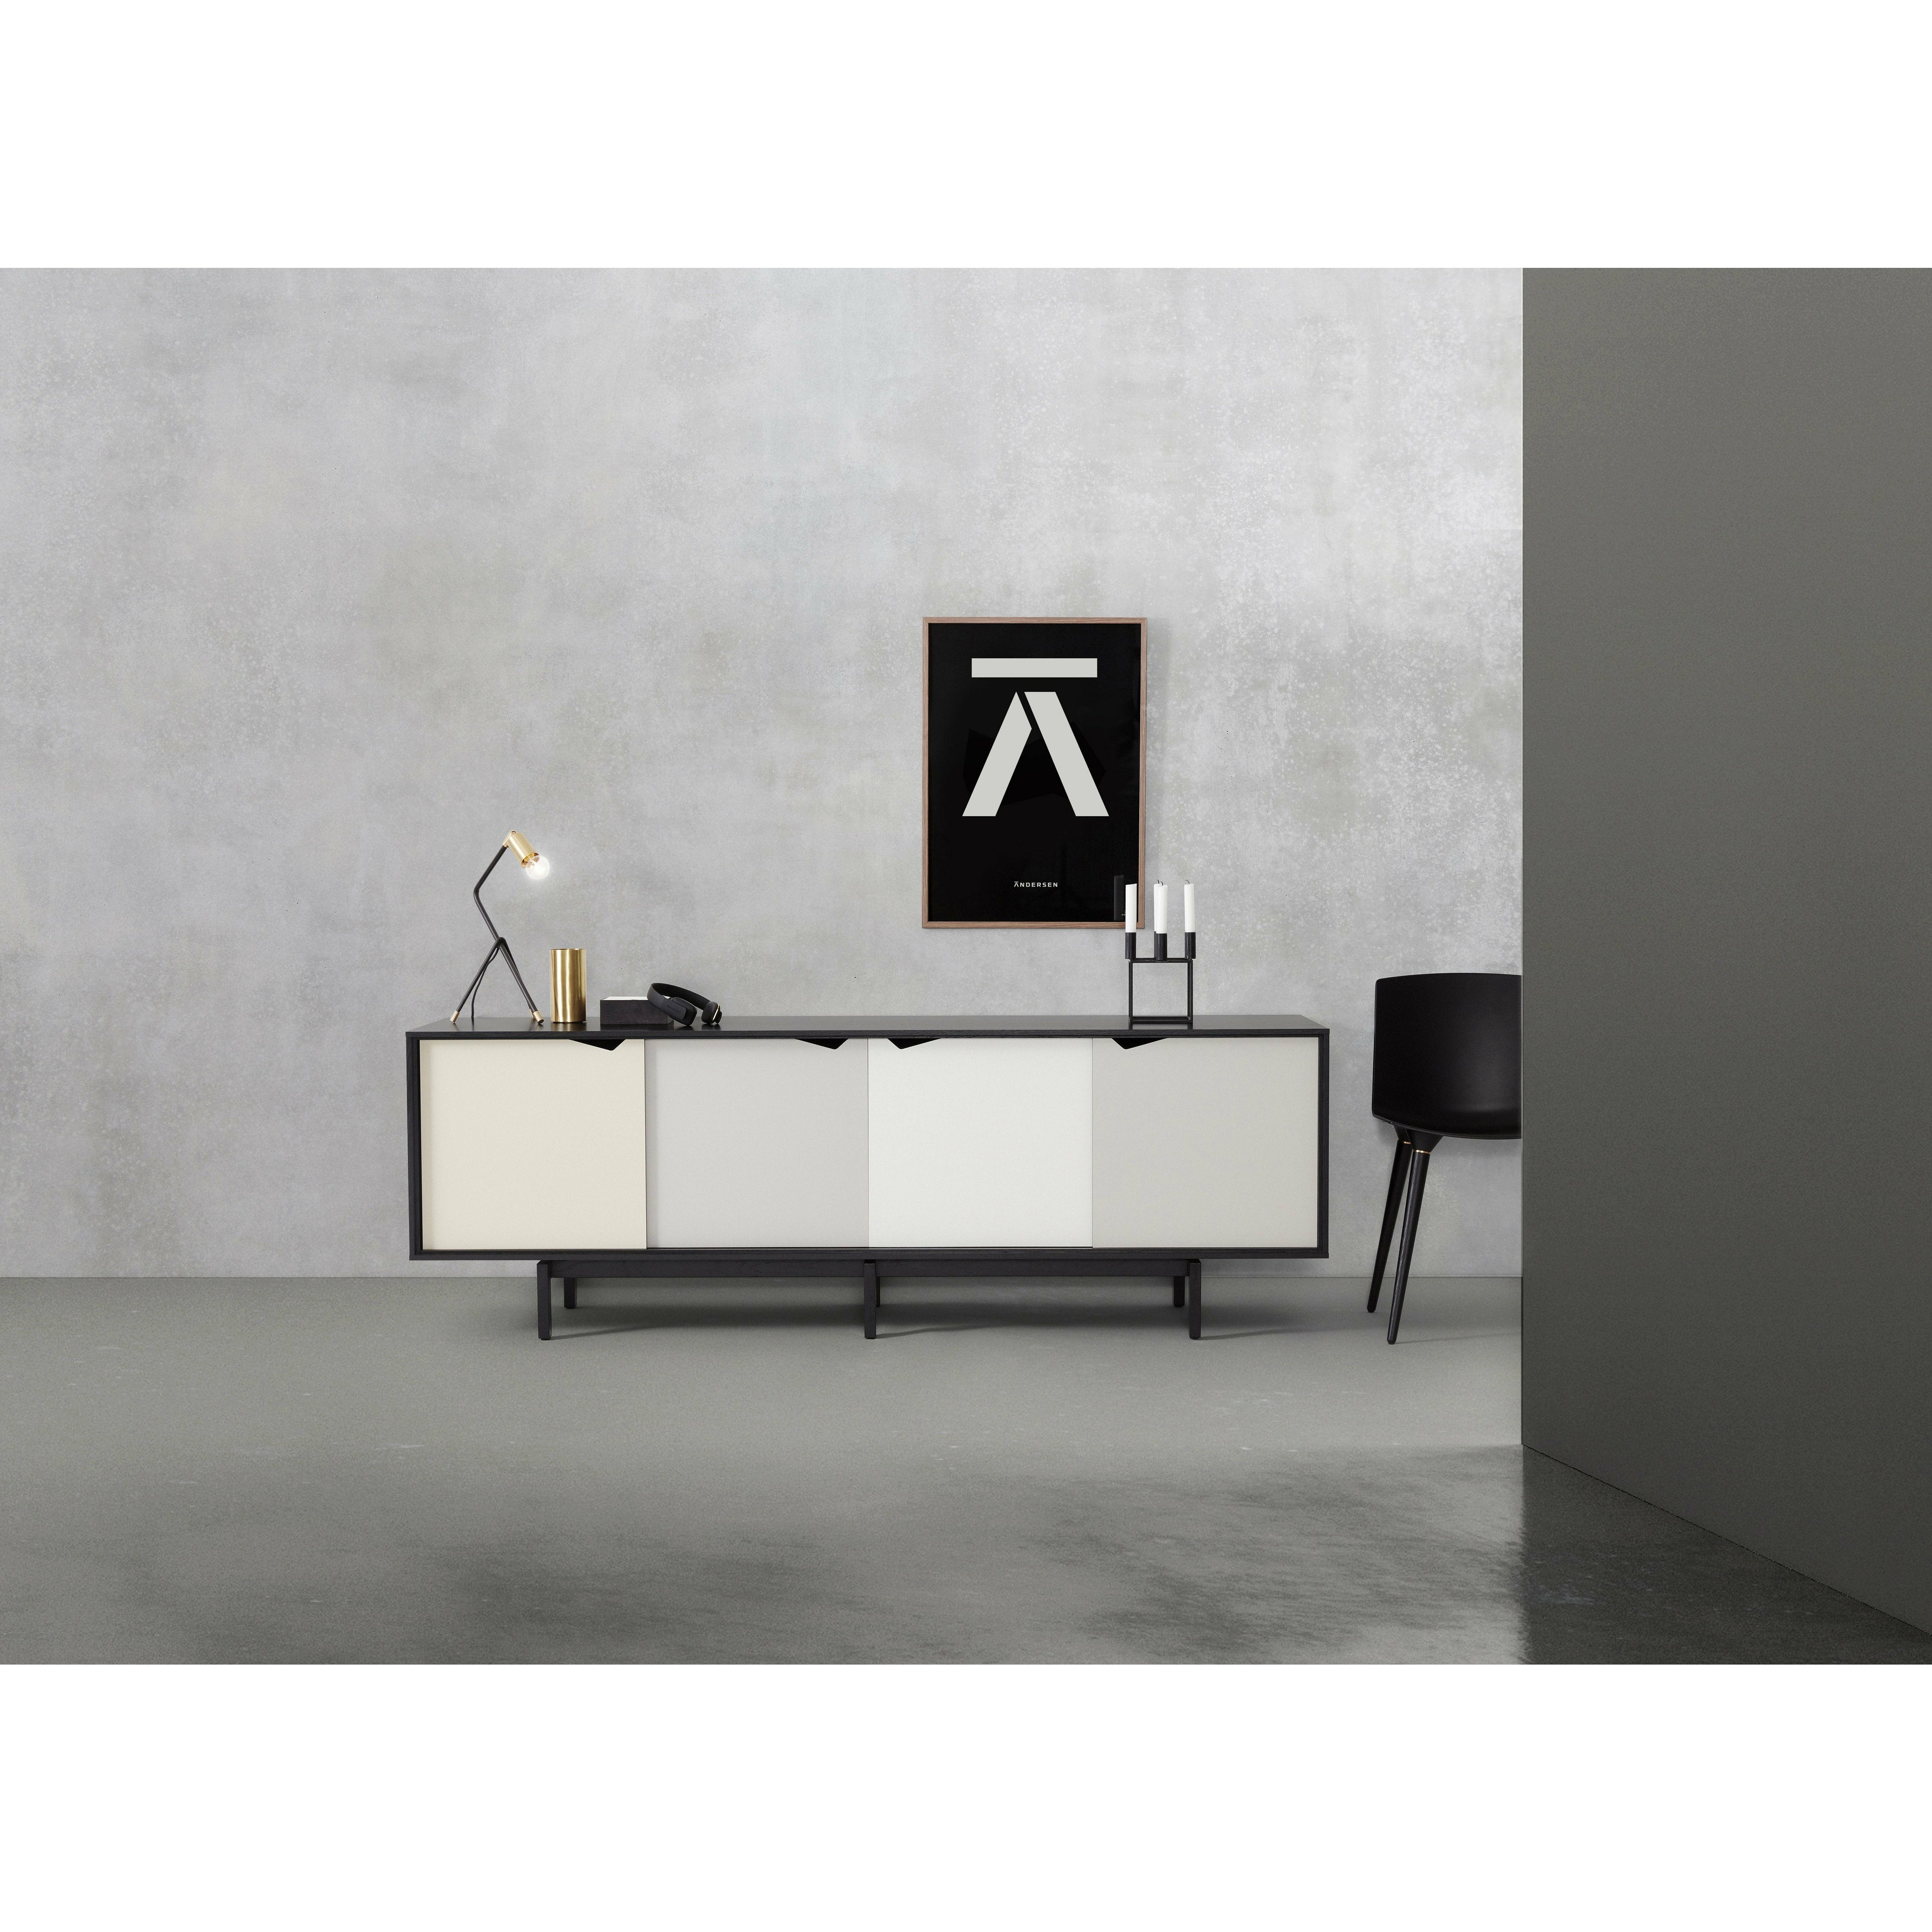 Andersen Furniture S1 aparador negro, cajones multicolores, 200 cm